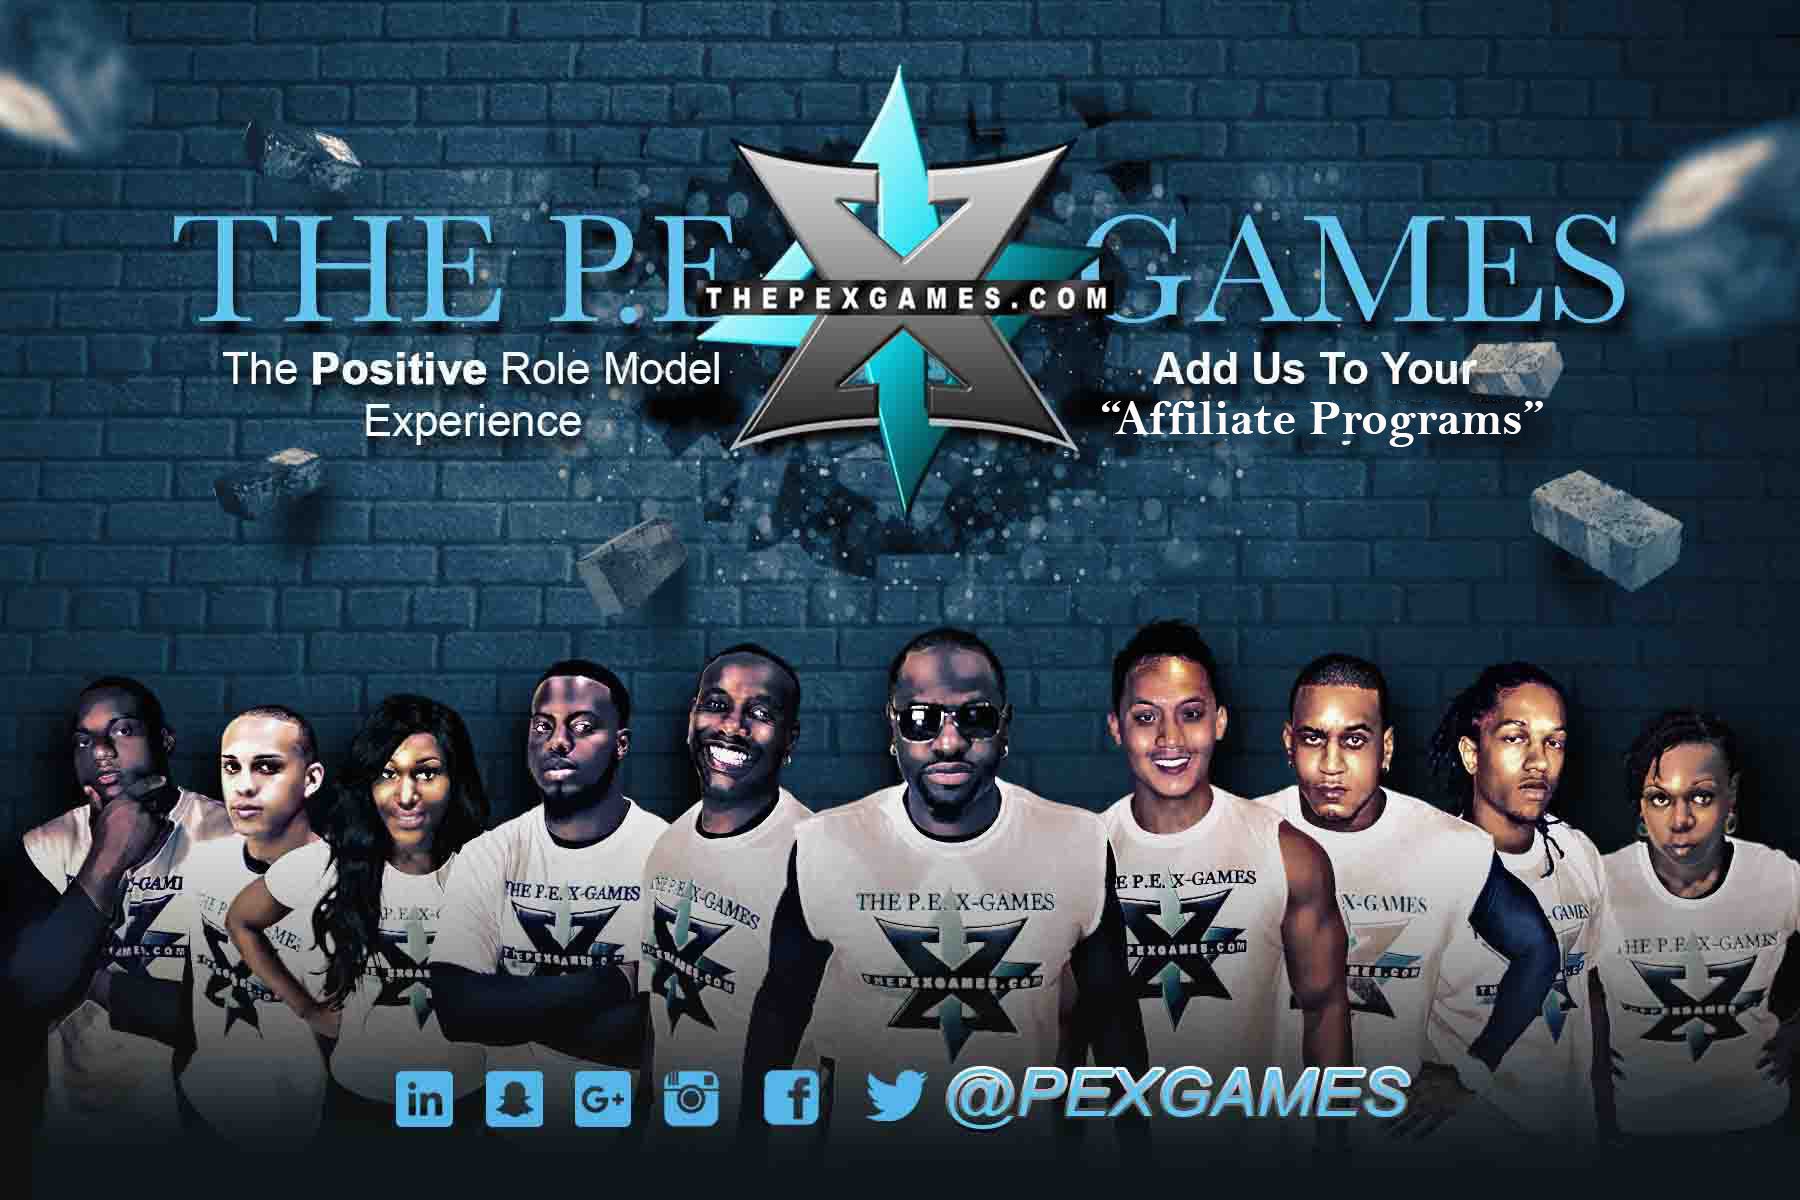 The P.E.X Games